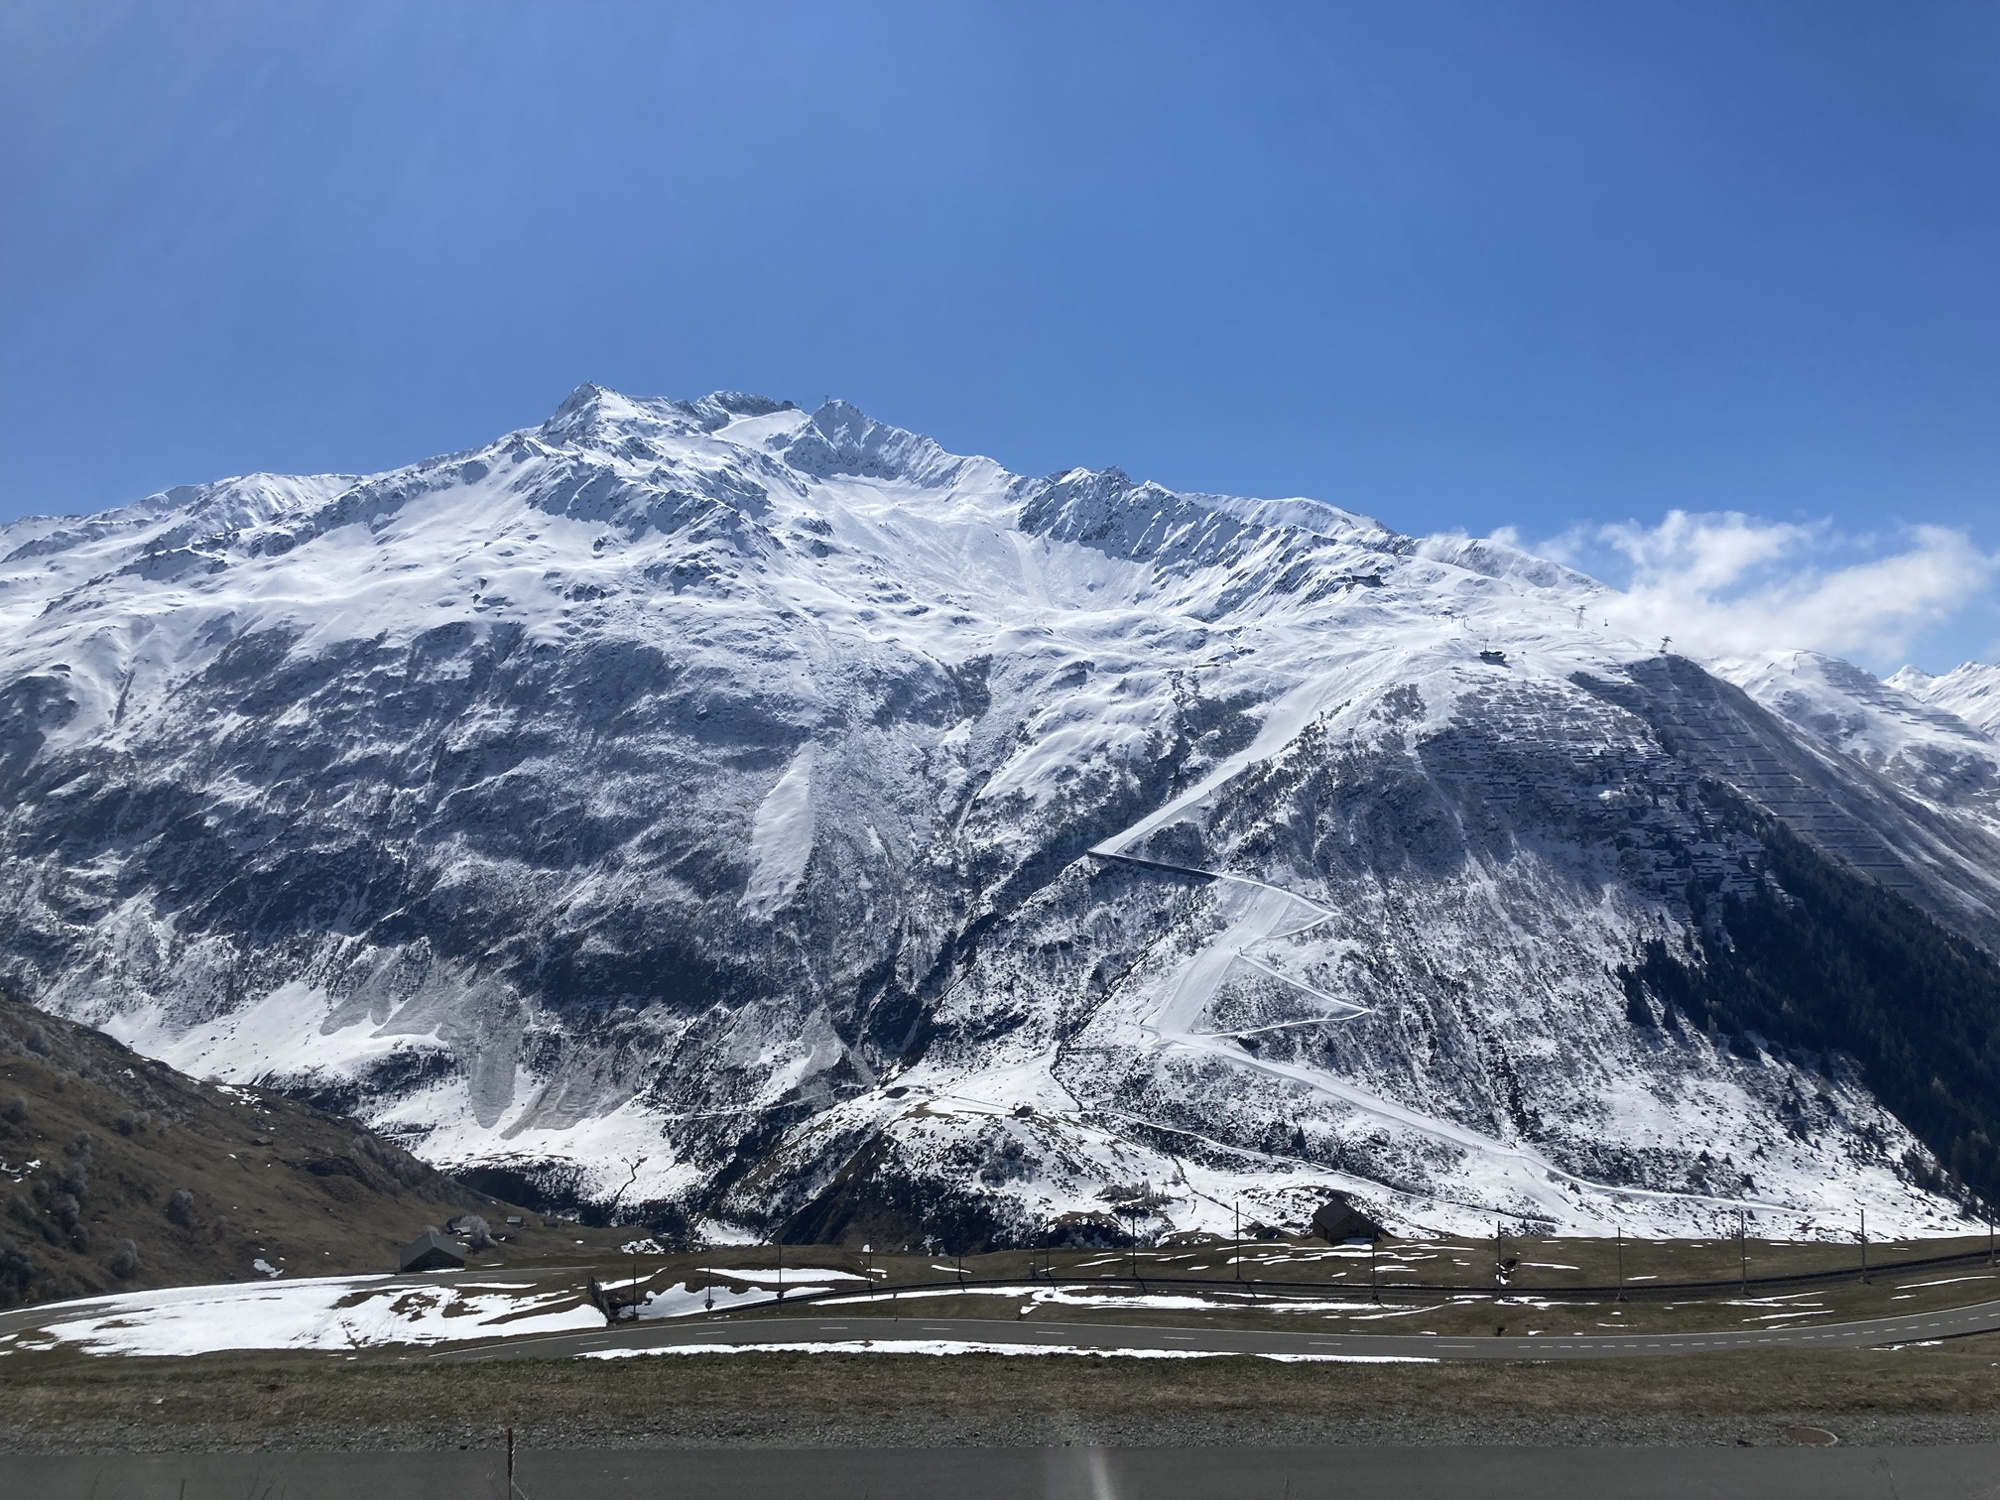 schneebedeckte Bergkette vor strahlend blauem Himmel, eine Skipiste kreuzt die ansonsten scheinbar unberührten Berge